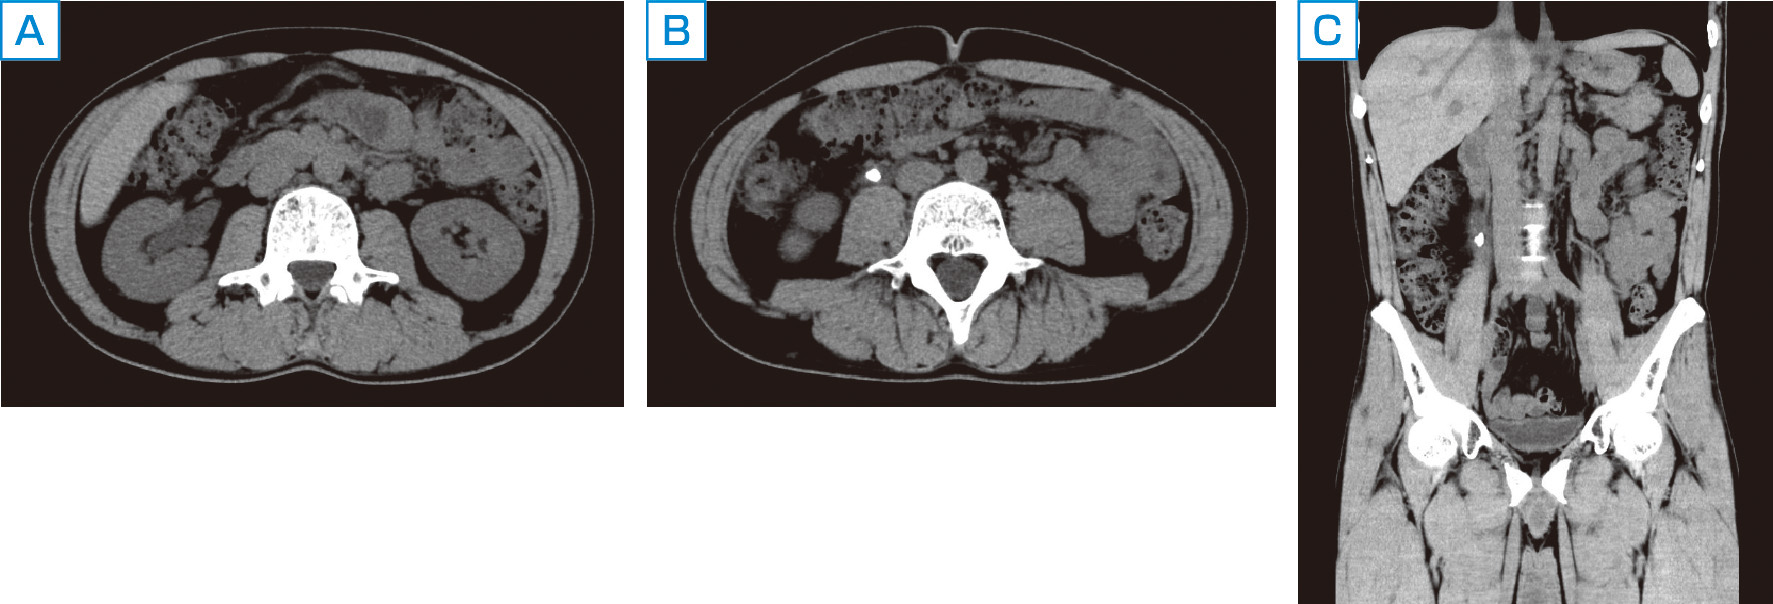 ⓔ図14-14-8　尿管結石のCT画像 A：CT横断像．右水腎症を認める． B：CT横断像．右尿管内に石灰化結石を認める． C：CT冠状断像．右上部尿管内に石灰化結石を認める．